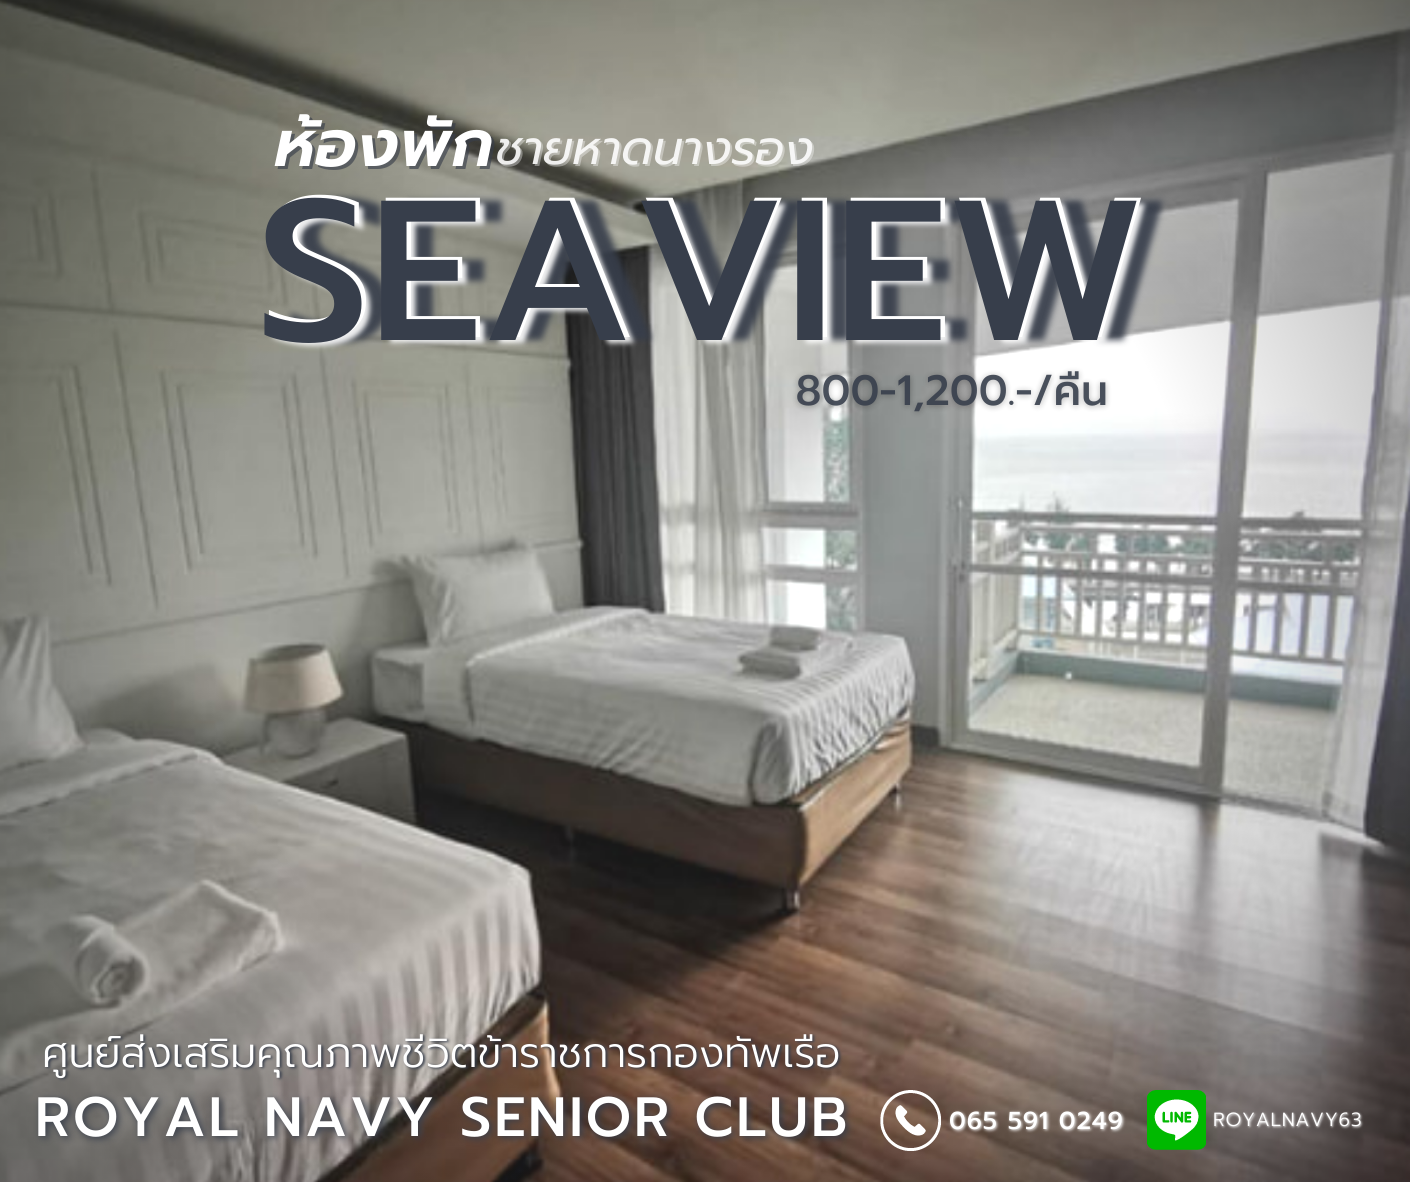 กองทัพเรือ เปิดให้บริการห้องพักริมทะเลหาดนางรอง แบบ Seaview ทุกห้อง